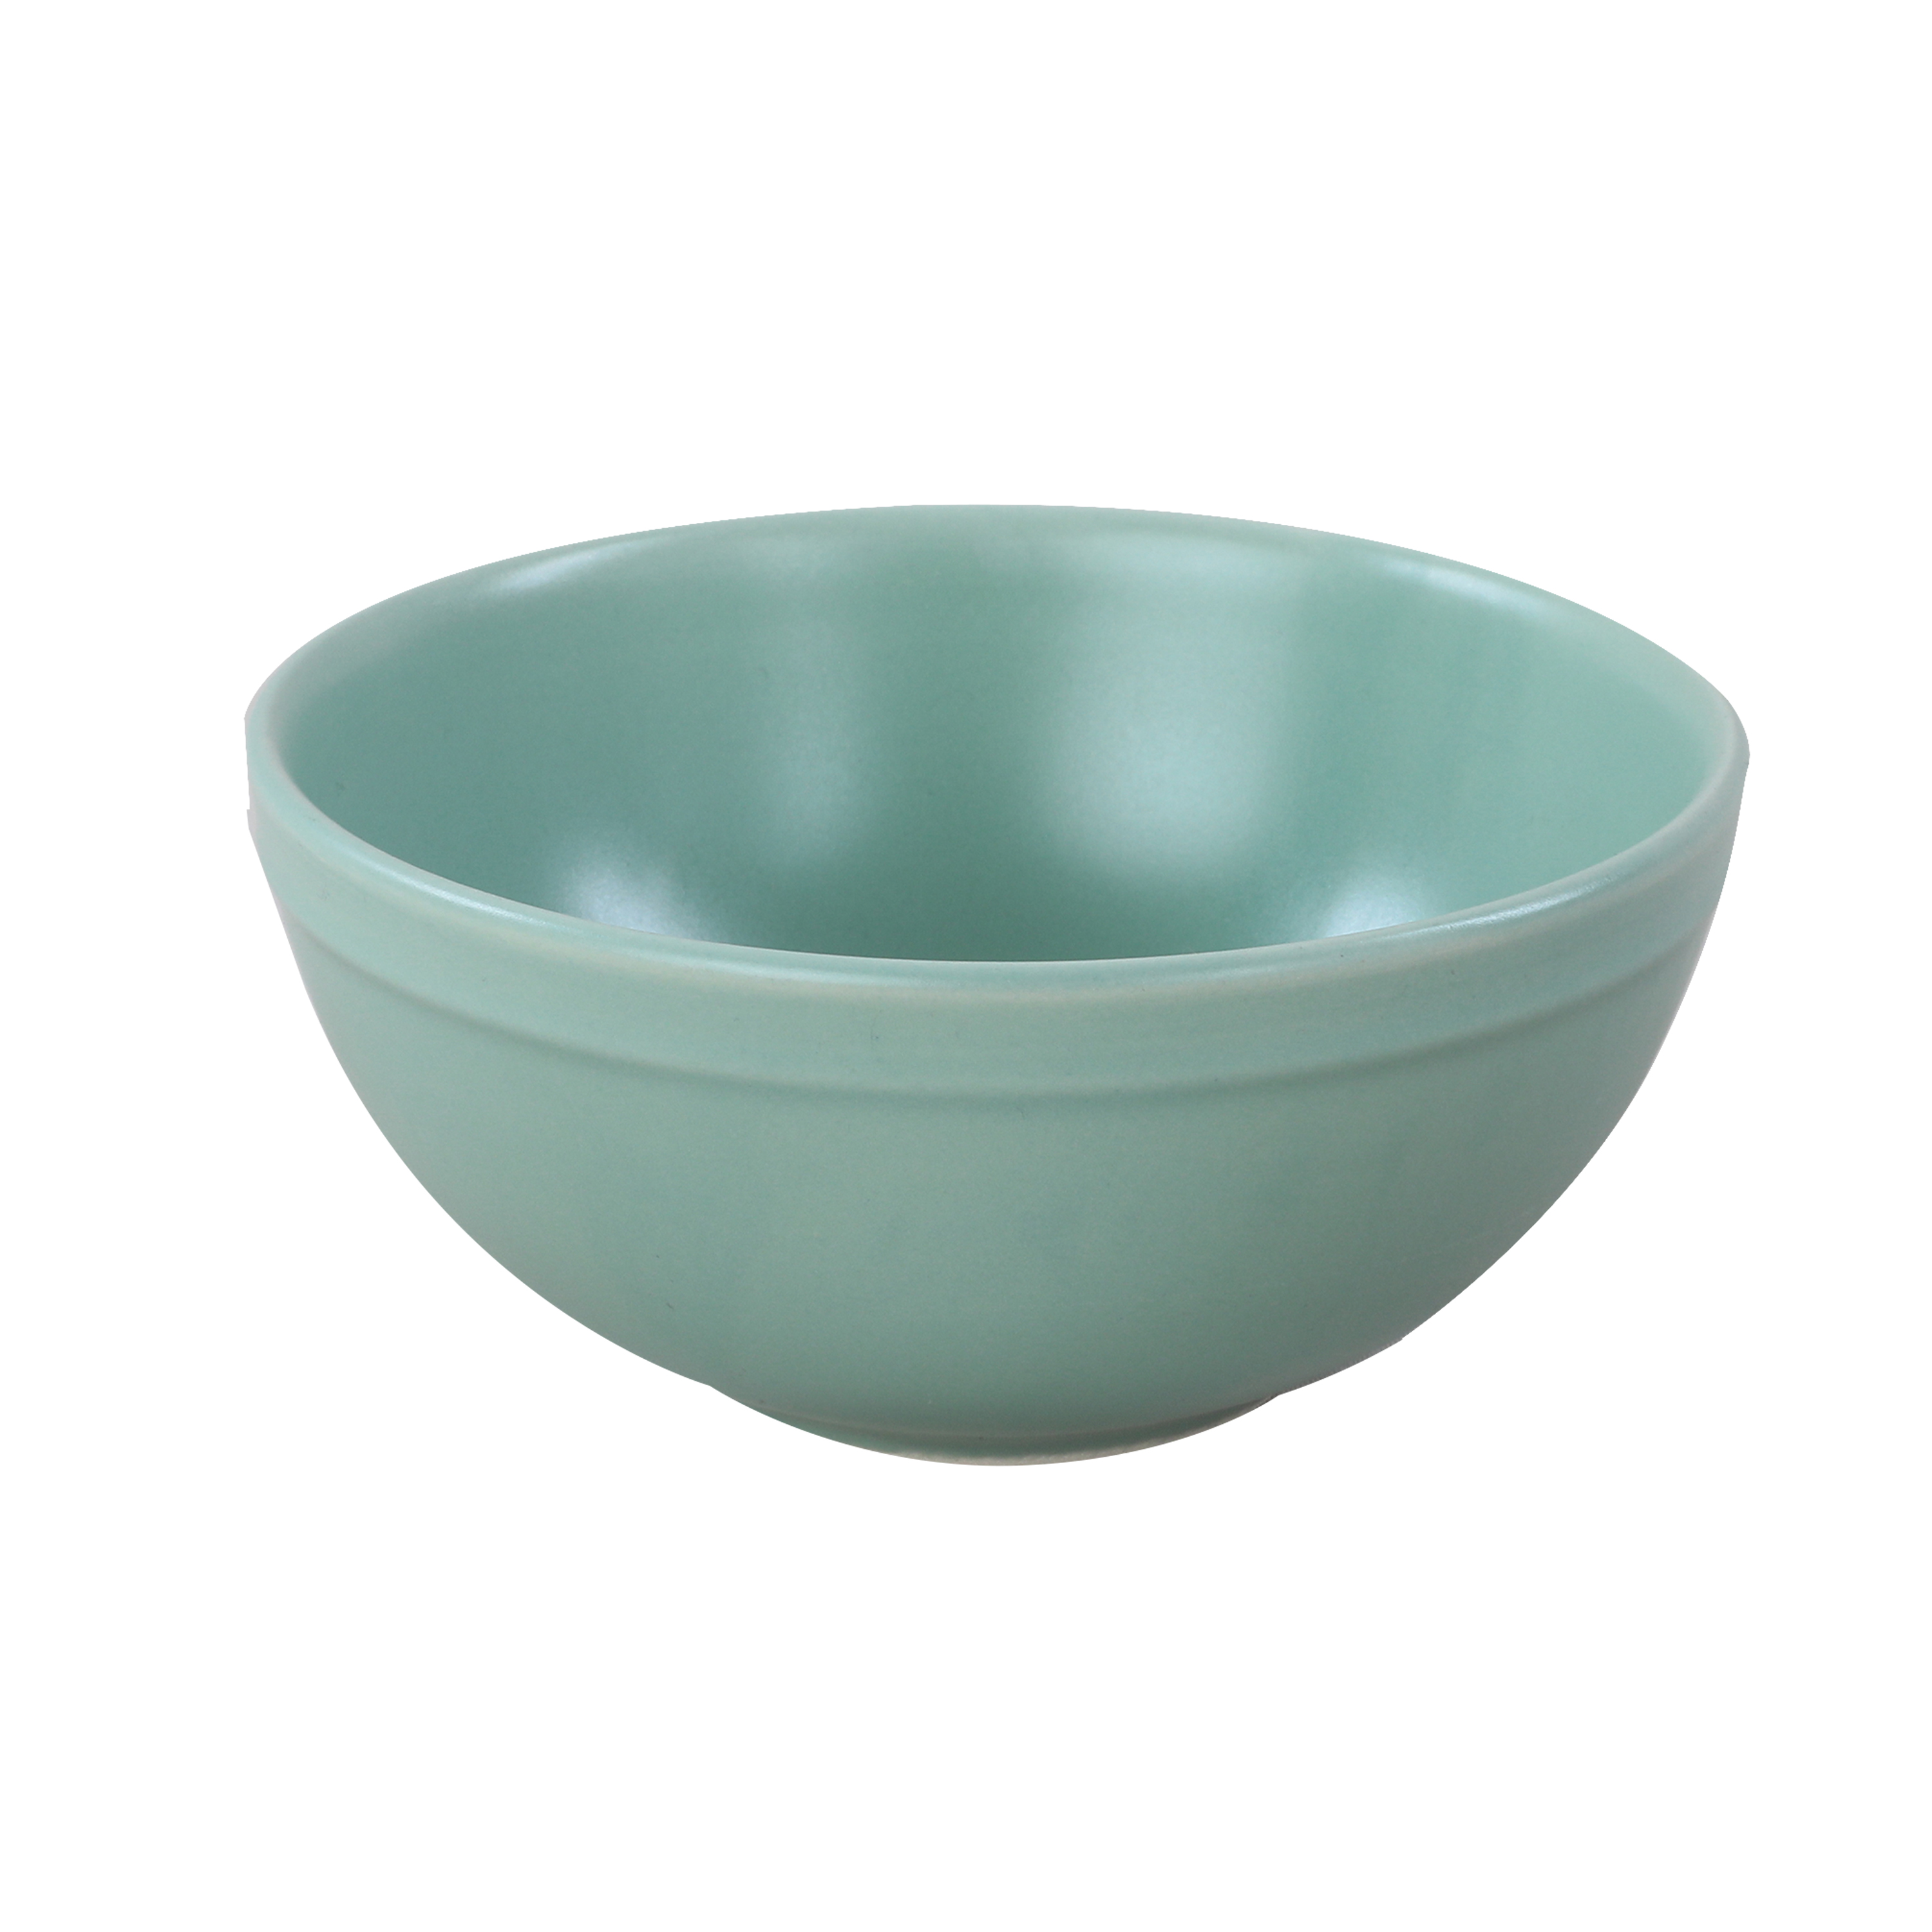 Bowl Semarang em ceramica D14xA6cm cor verde